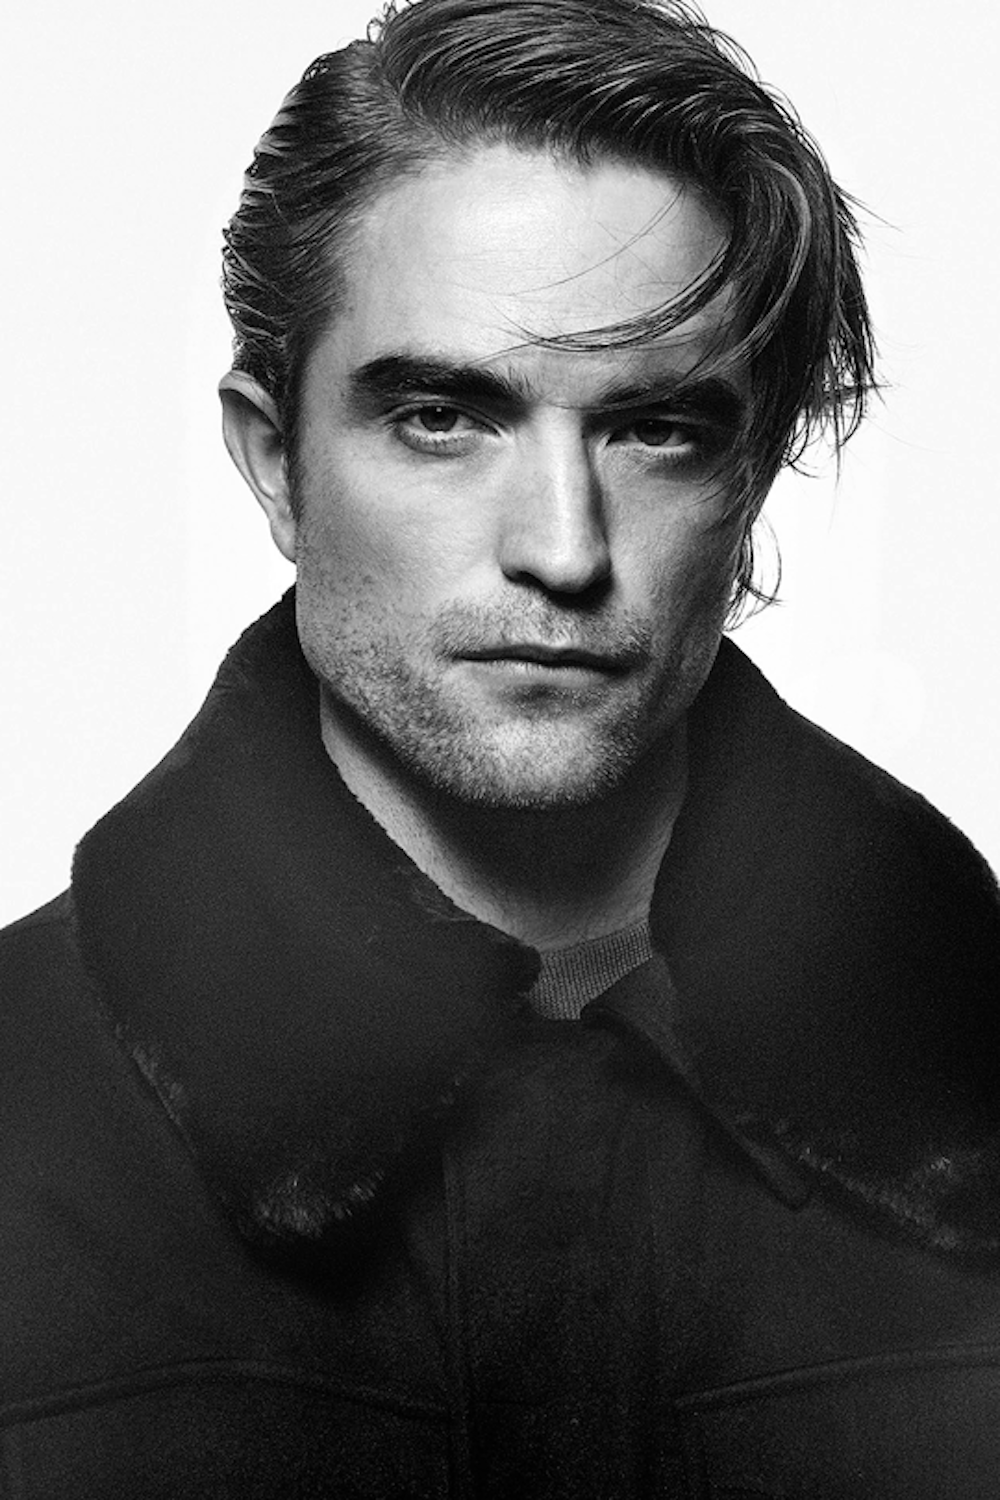 Robert Pattinson - Actor expected to play next Batman after Ben Affleck